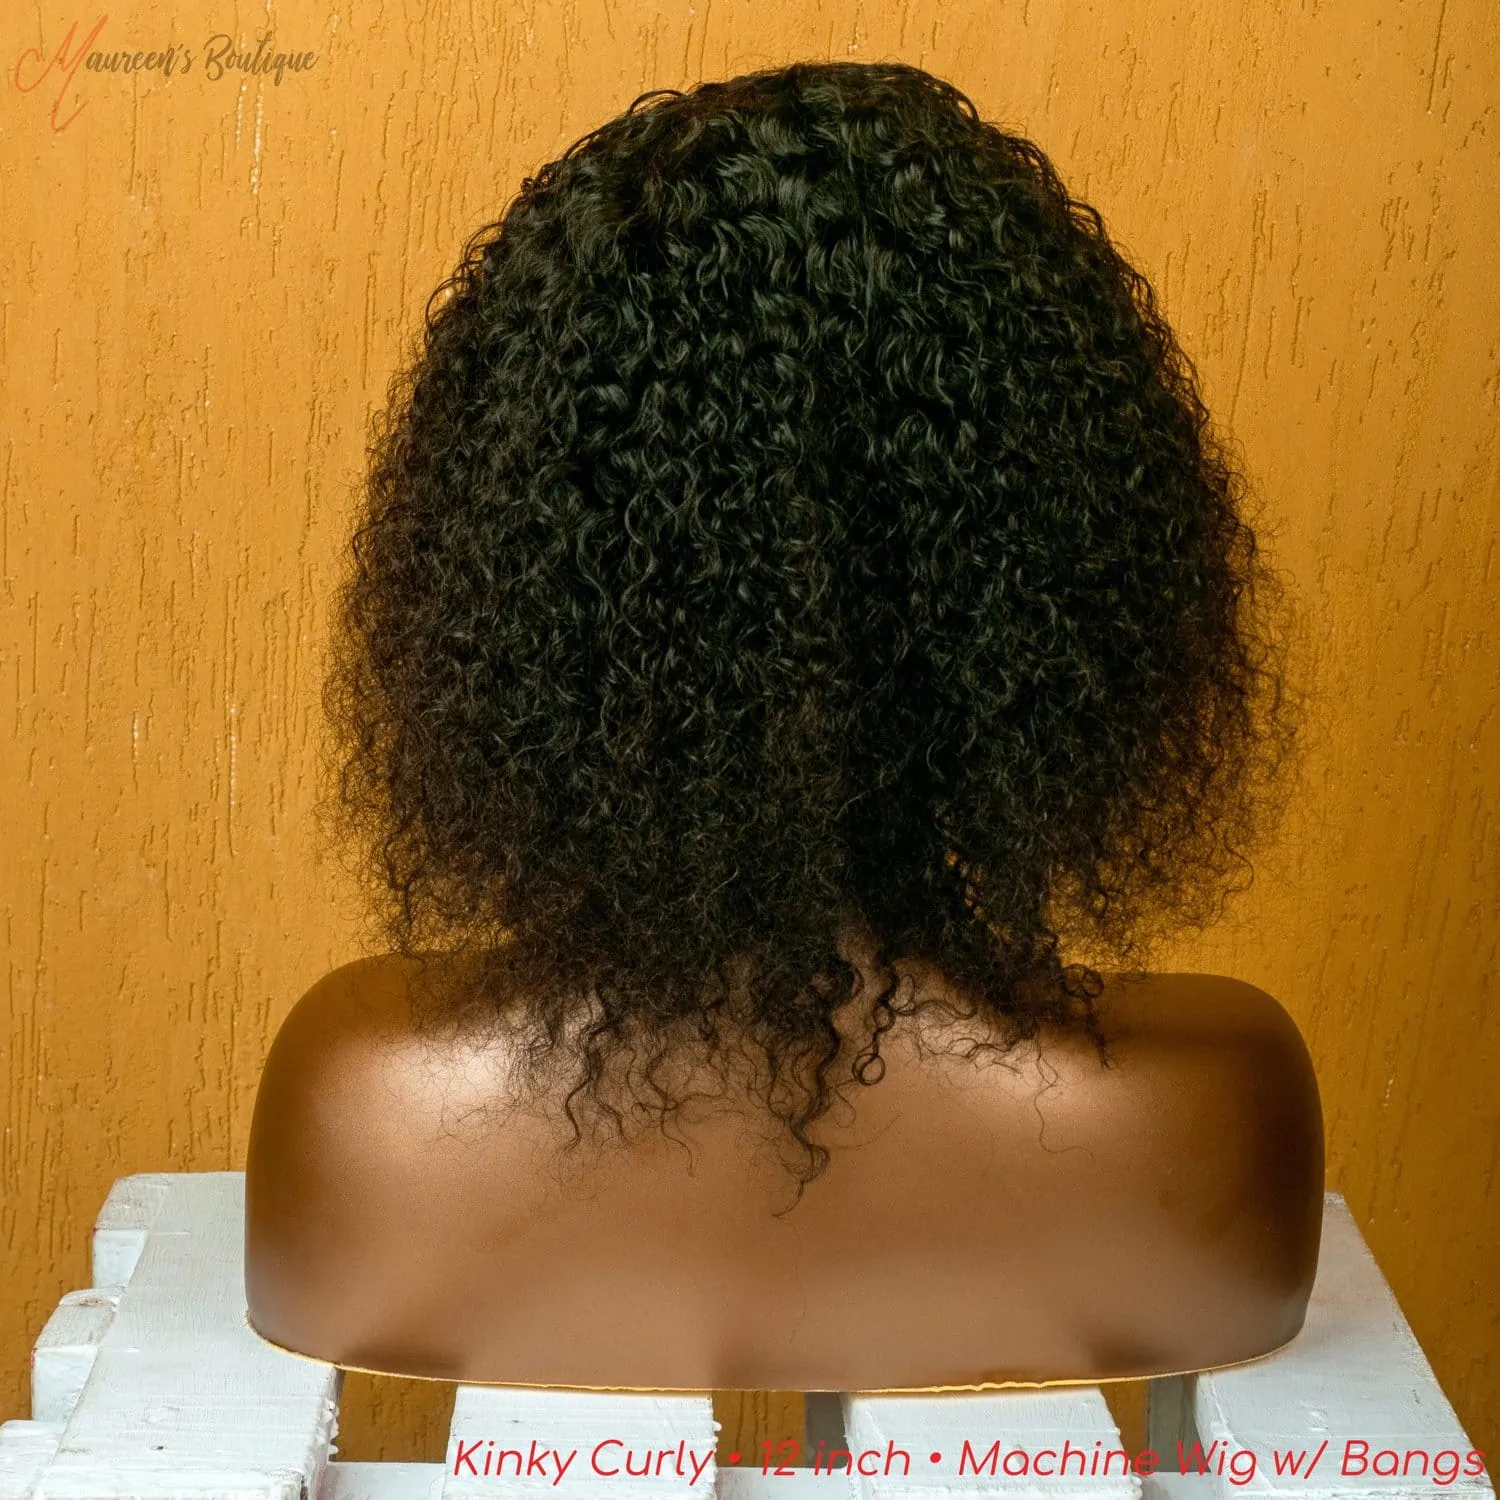 Kinky Curly human hair machine wig with bang 12 inch maureens.com 3